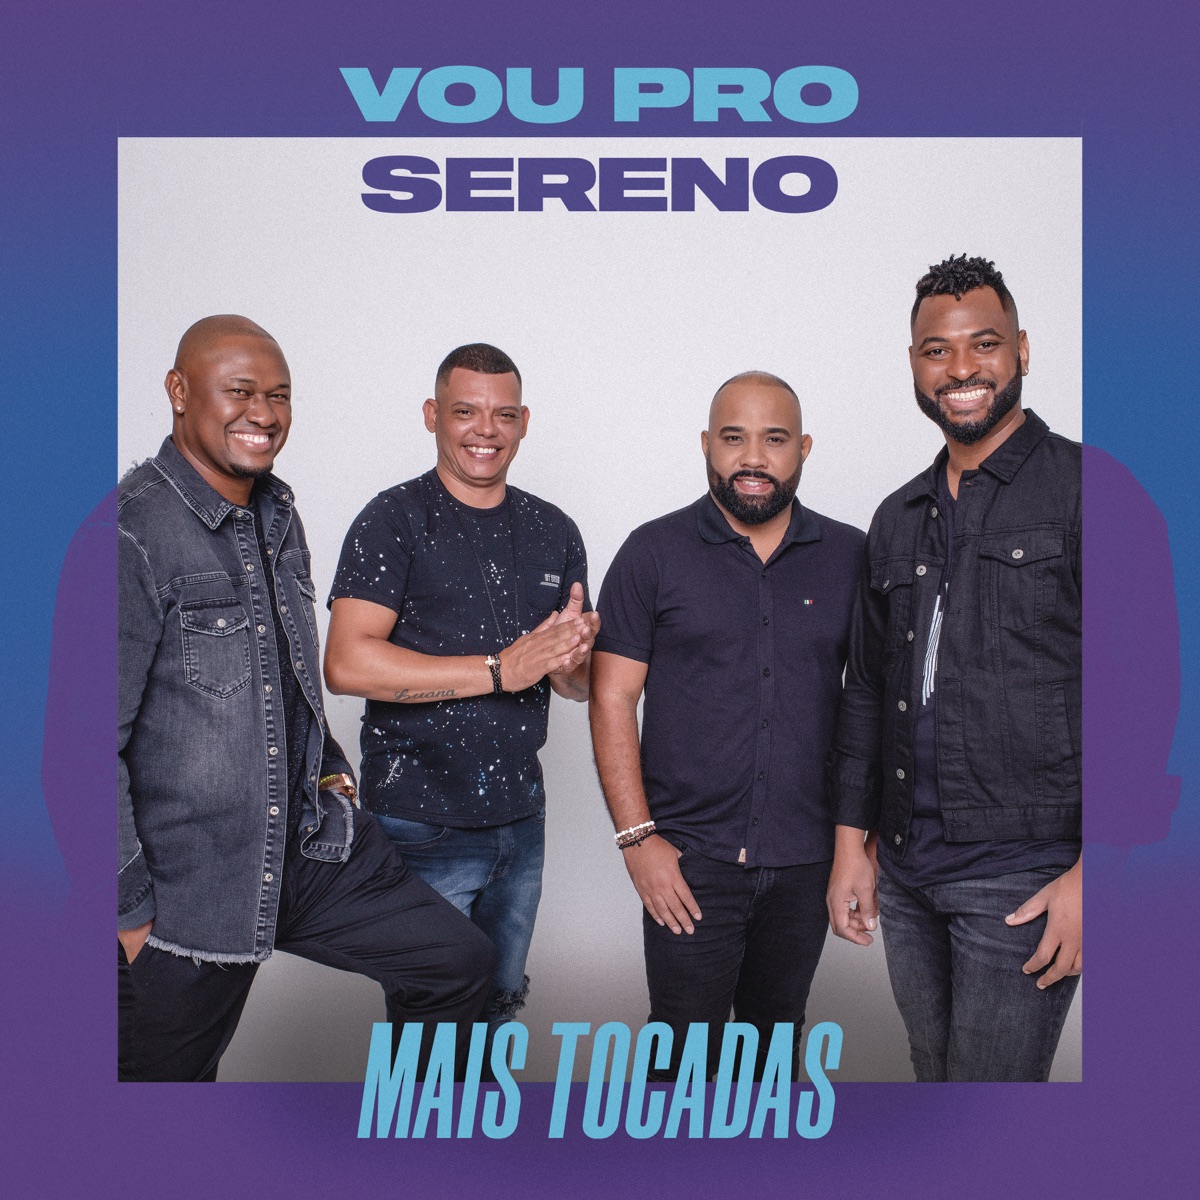 Jogando em Casa (Ao Vivo) - Album by Vou pro Sereno